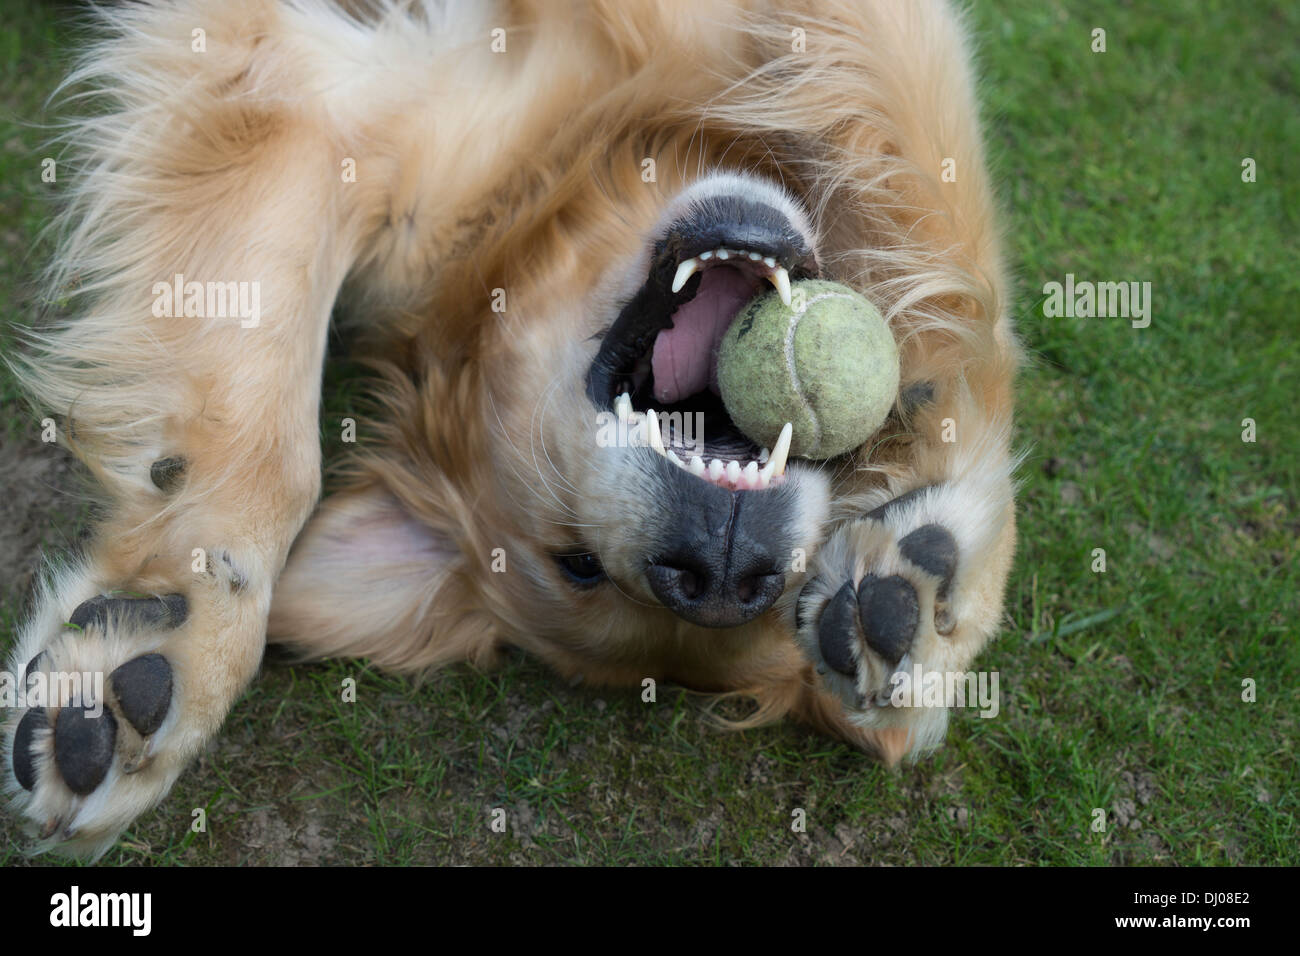 golden retriever Labrador dog face teeth playing Stock Photo